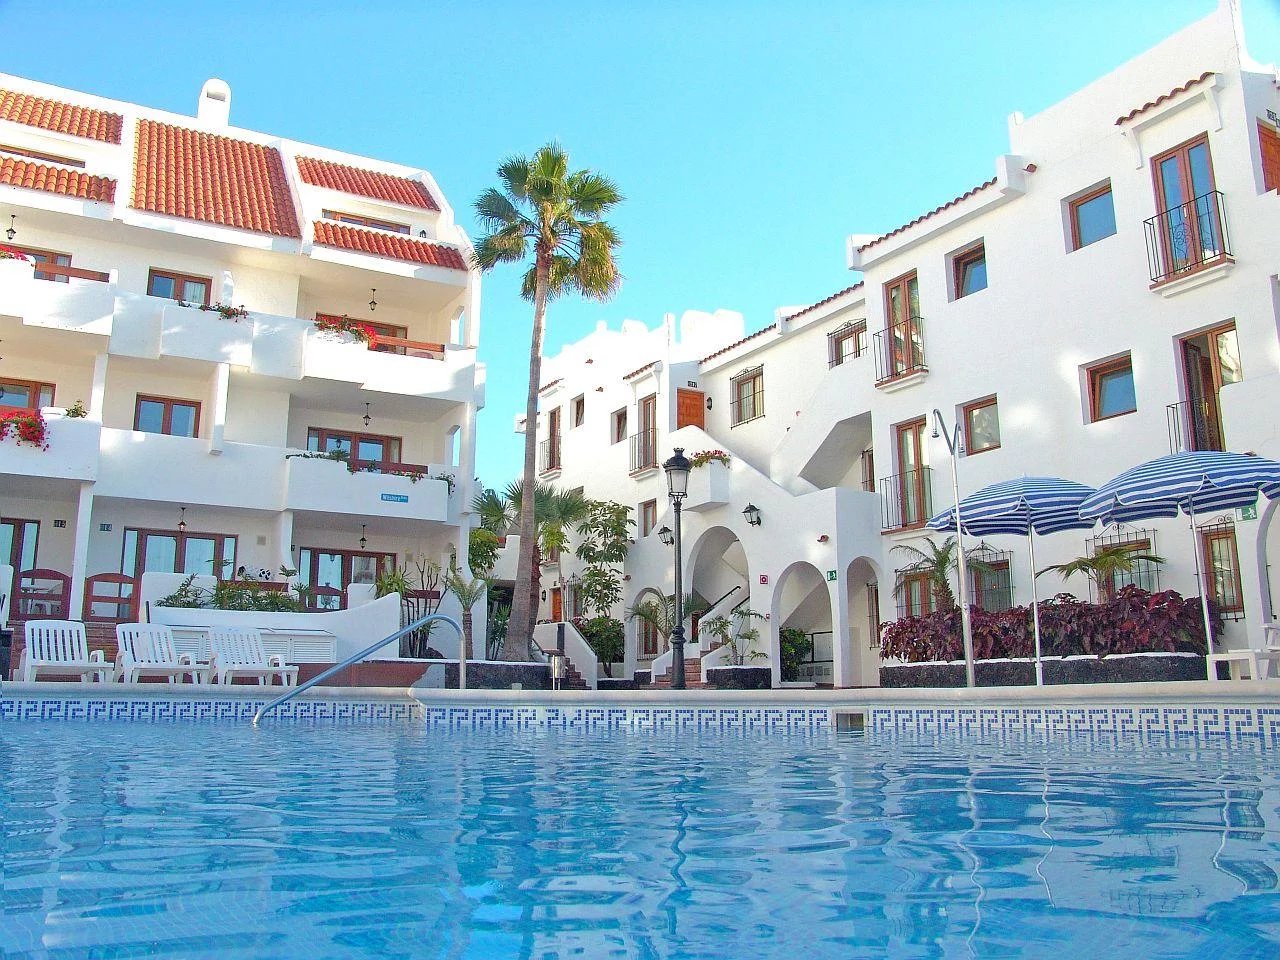 Verkoop Appartement - Playa de los Cristianos - Spanje